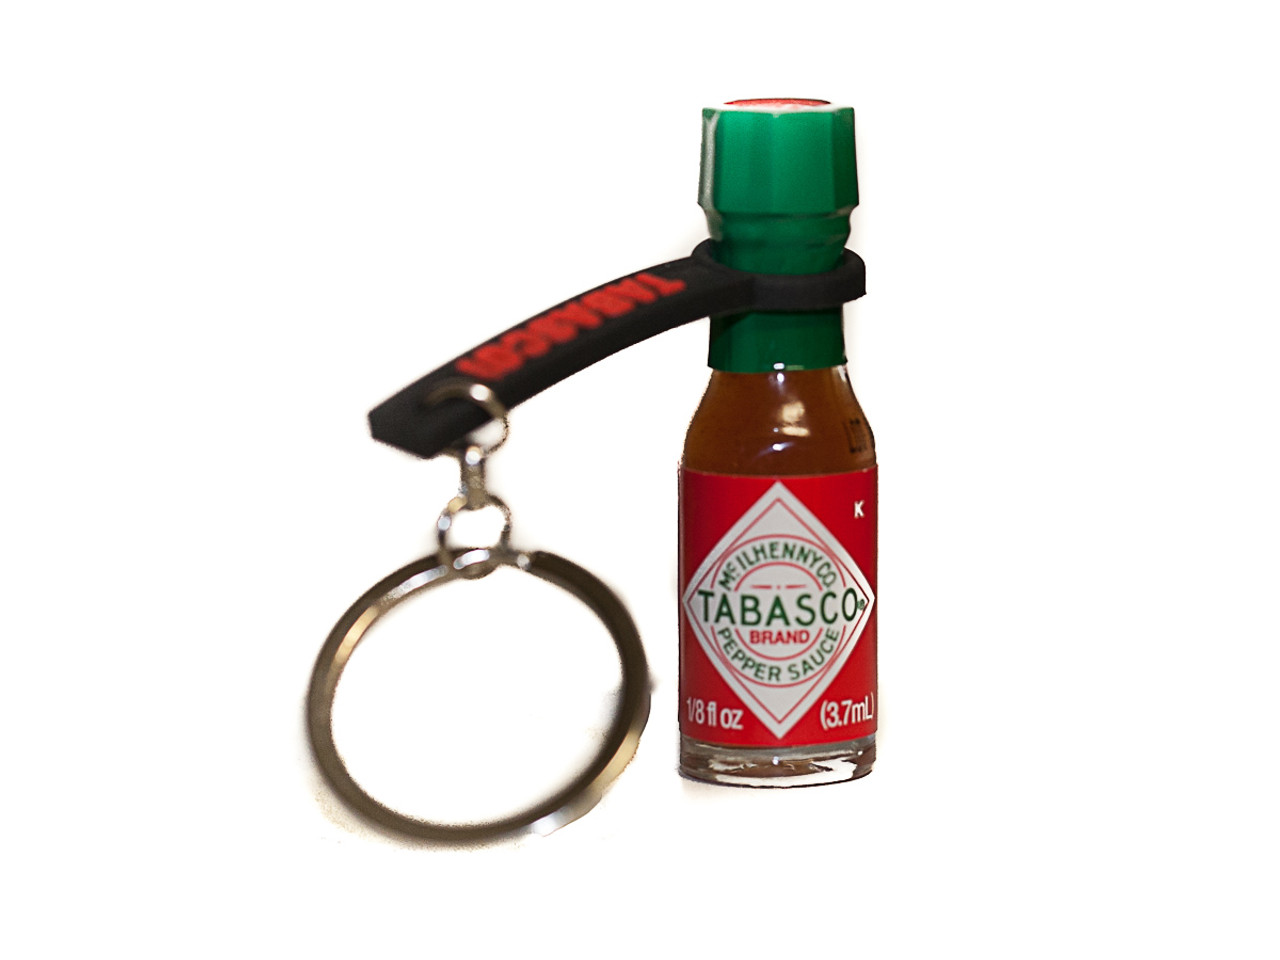 Hot Sauce keychain, franks, food keychain, mini keychain, novelty gift